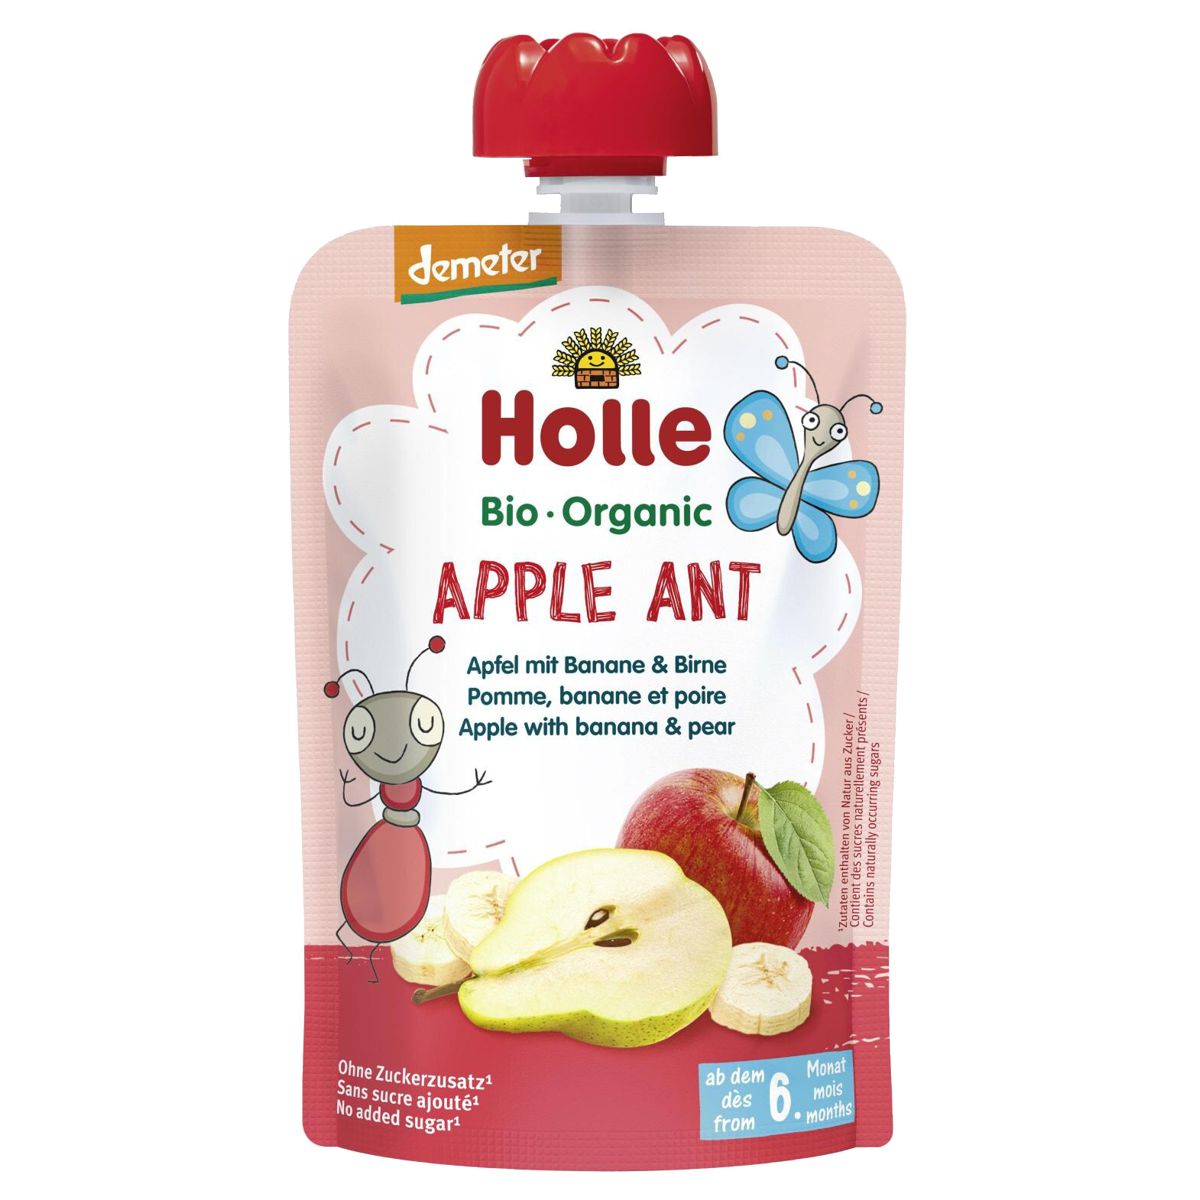 Holle_Apple_Ant_Pouchy_Apfel_Banane_Birne_kaufen